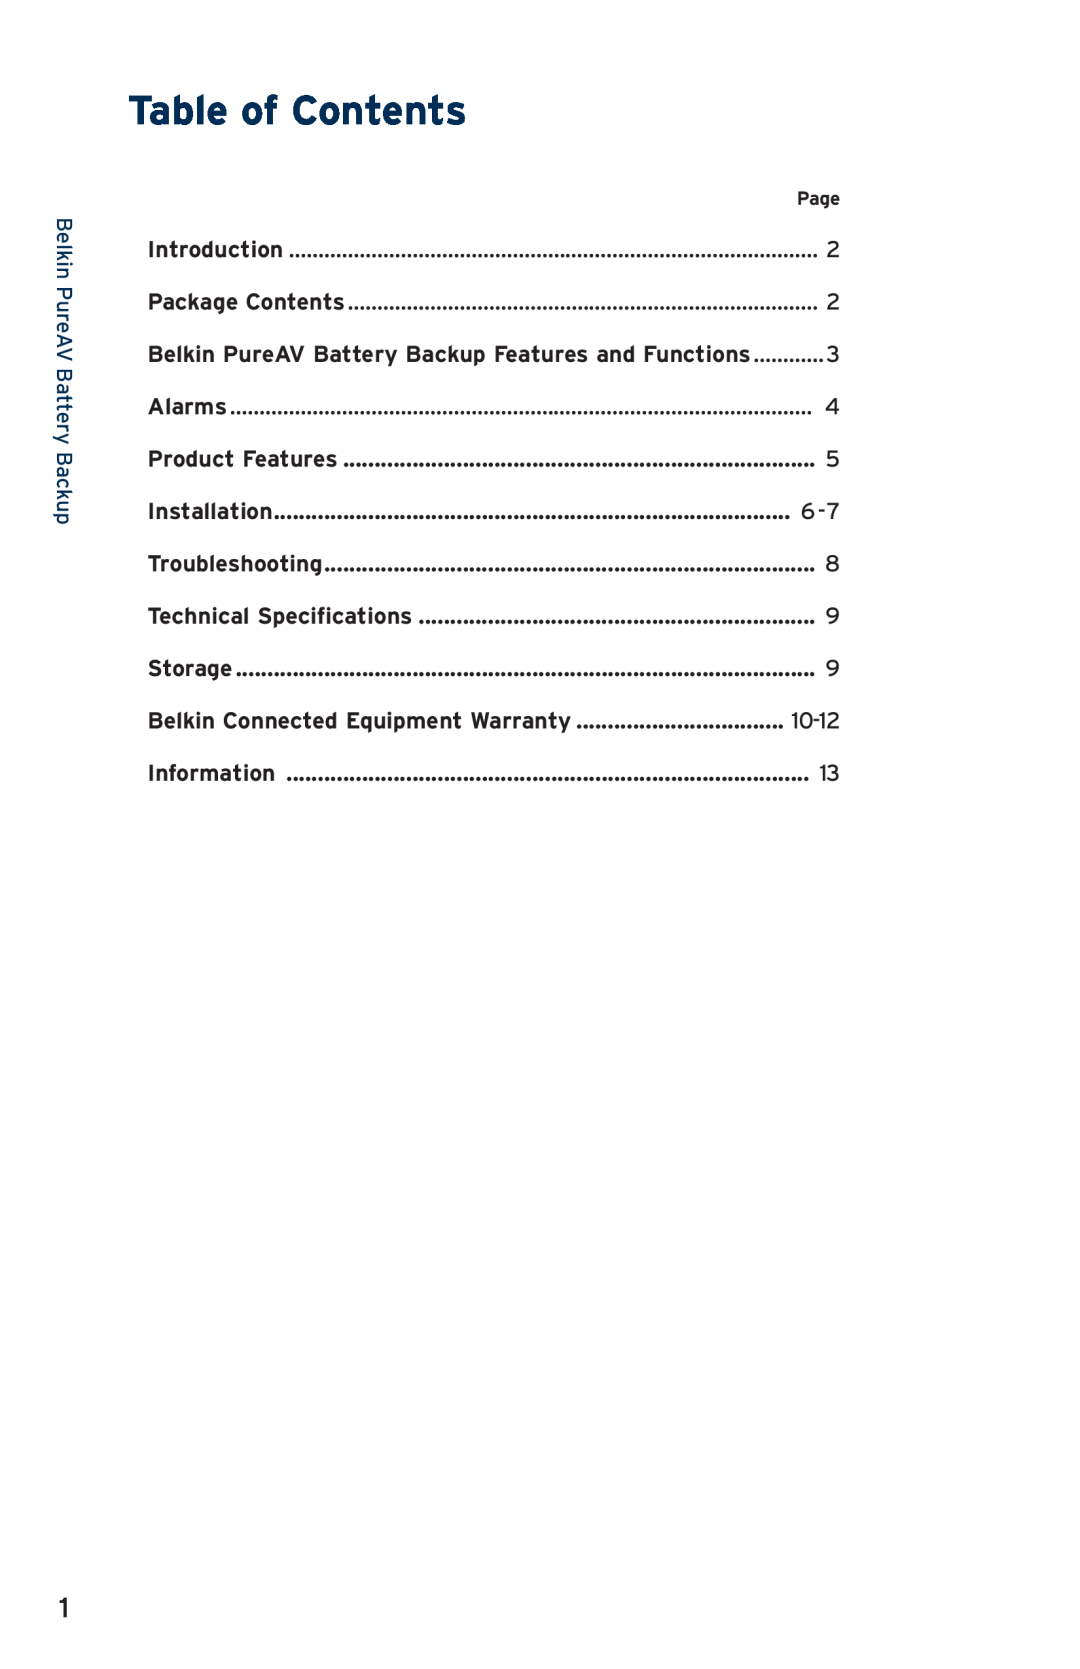 Belkin AP30800fc10-BLK Table of Contents, Belkin PureAV Battery Backup, Installation, Belkin Connected Equipment Warranty 